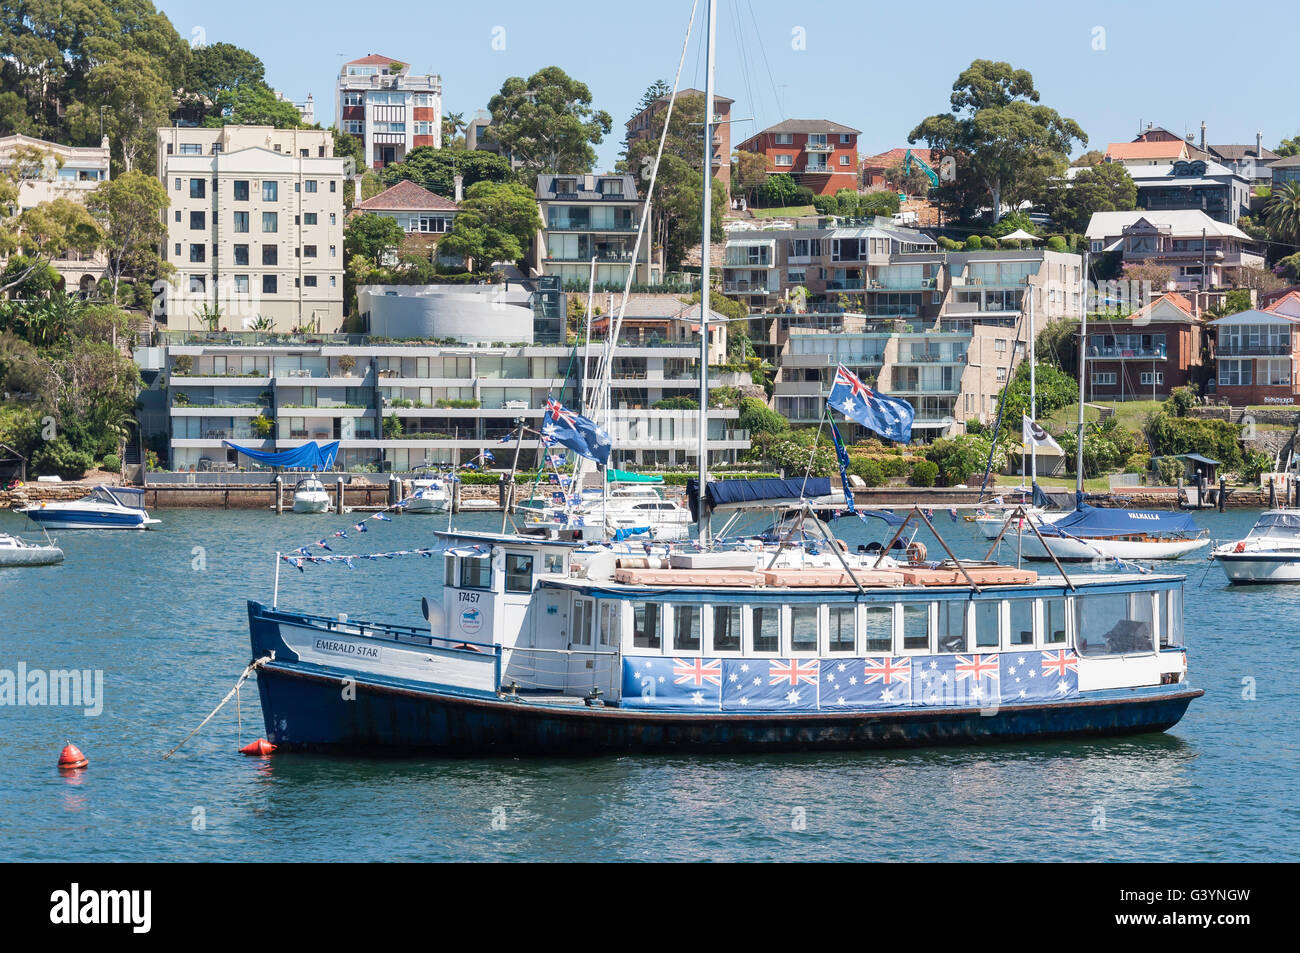 Emerald Star bateau de croisière à l'ancre, Lavender Bay, Sydney, New South Wales, Australia Banque D'Images